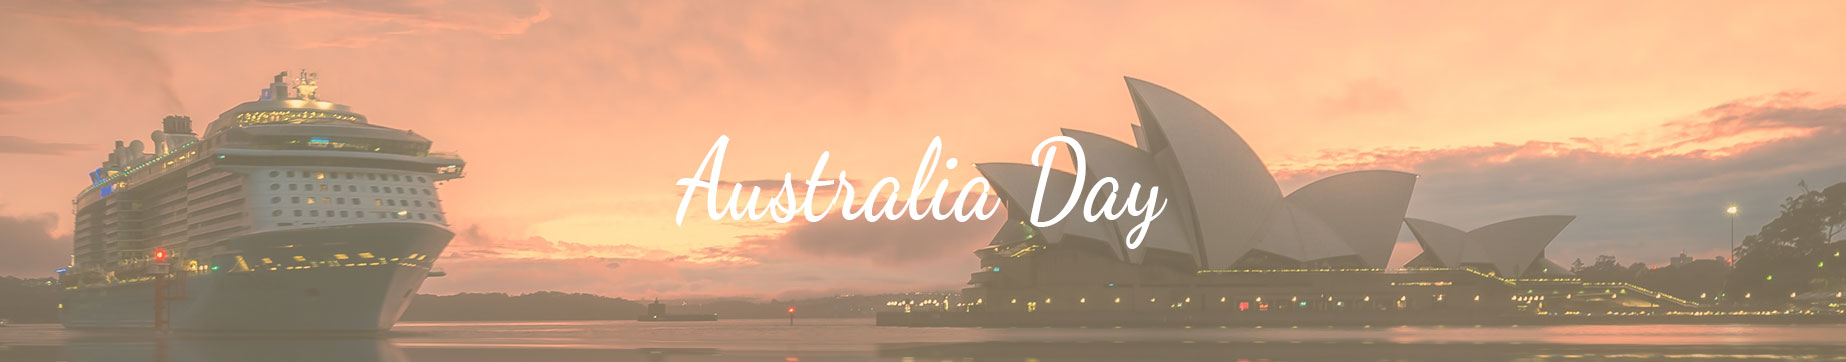 Celebrations Australia Day Under $5